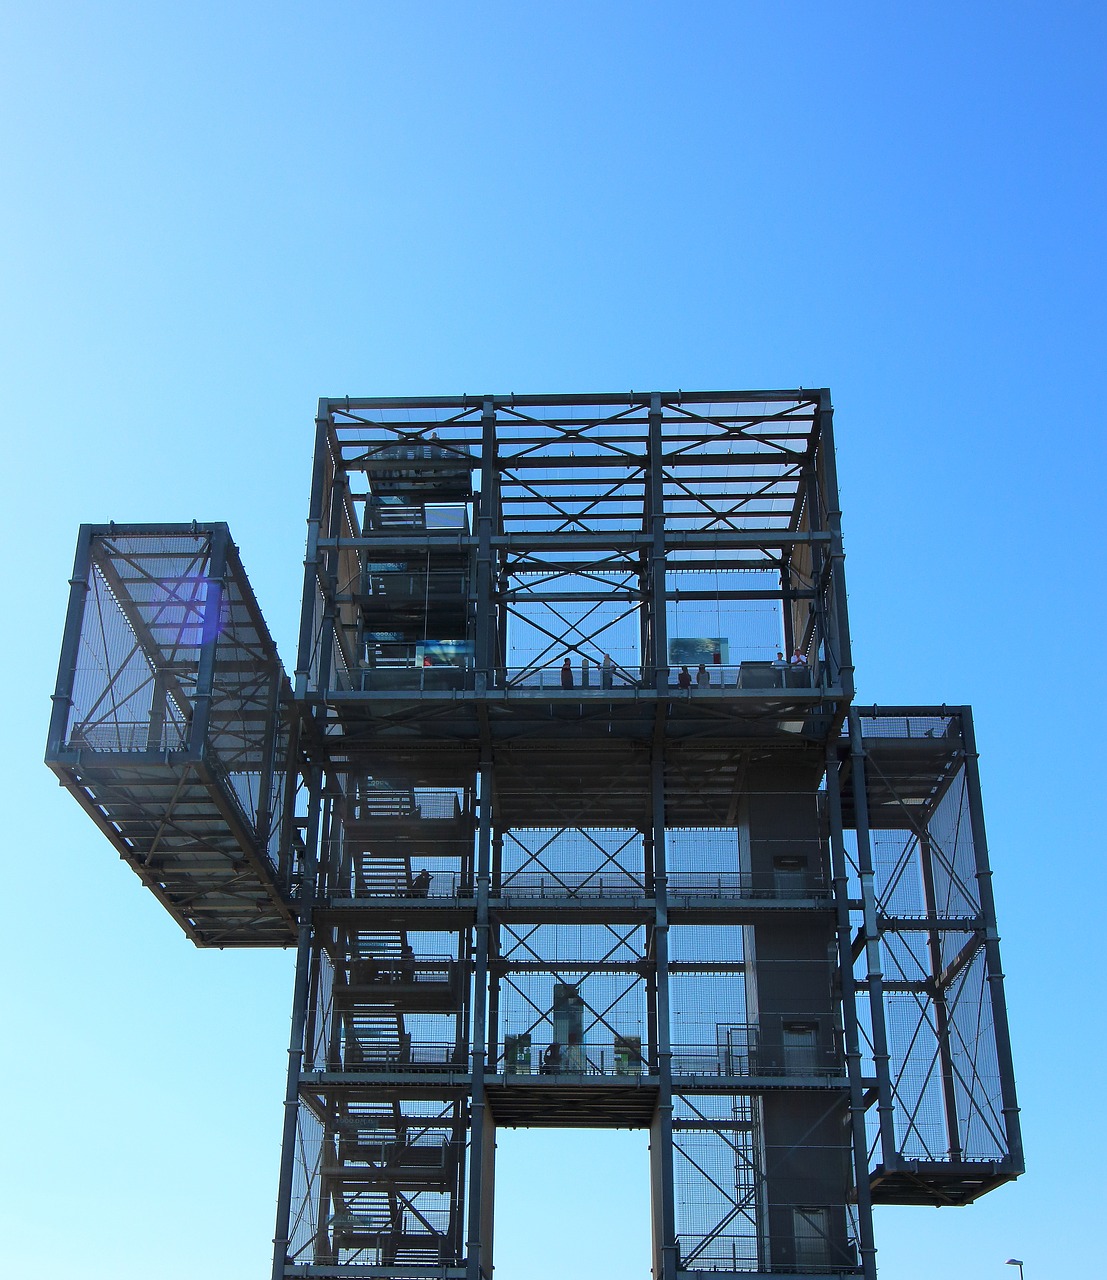 Image - indemann observation tower